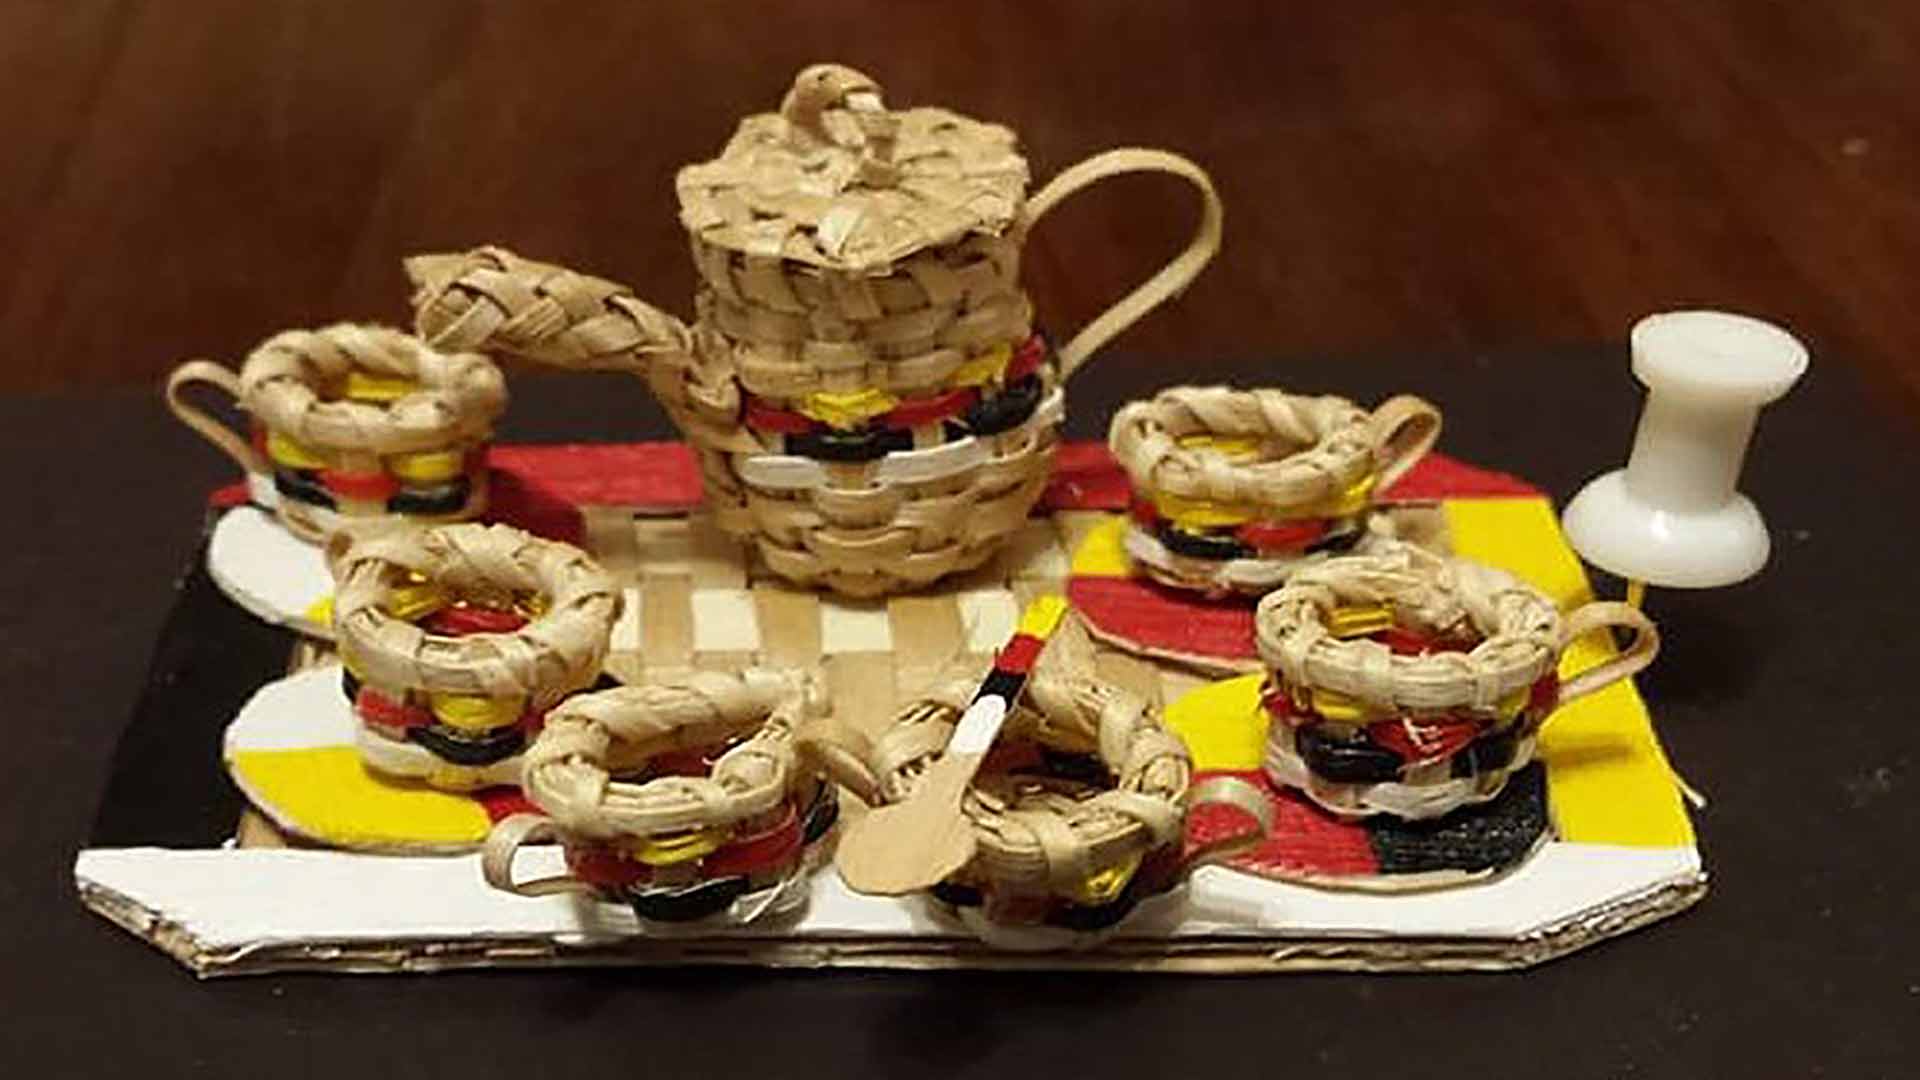 Un ensemble de six tasses de thé, chacune plus petite qu’une épingle de sûreté, et une théière miniature, le tout tissé à partir de bandes de bois.